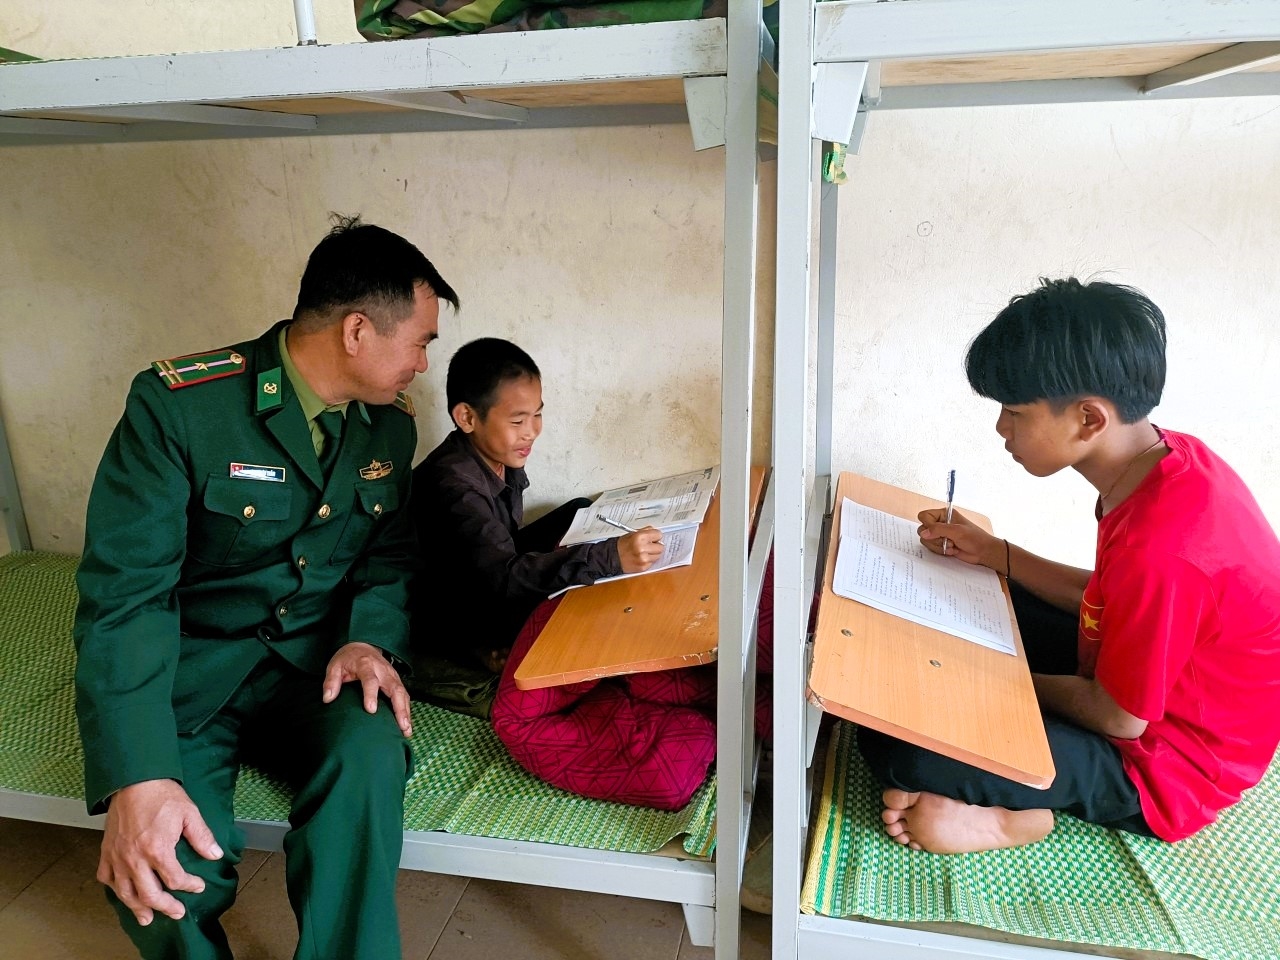 Thiếu tá Phan Văn Thắm, Đồn Biên phòng Môn Sơn, Bộ đội Biên phòng Nghệ An thường xuyên hỗ trợ, giúp đỡ các em học sinh trong học tập tại ký túc